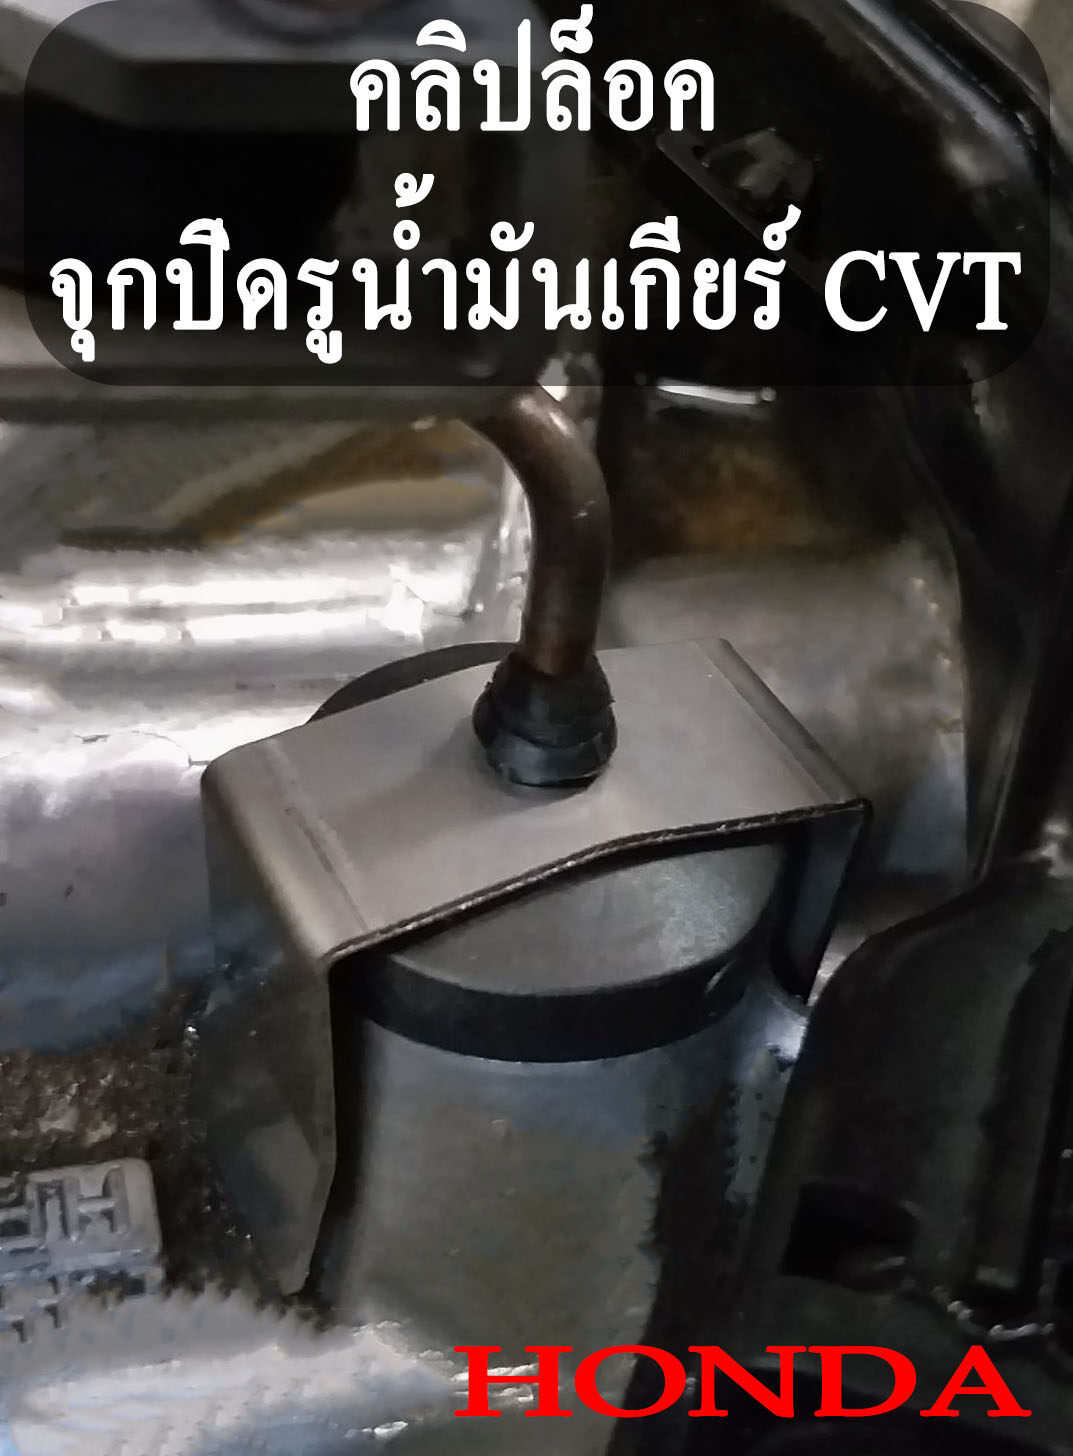 คลิปล็อค ก้านวัดน้ำมันเกียร์ จุกปิดรูน้ำมันเกียร์ HONDA CVT City GK FC FK HRV CR-V คลิปล็อก ฮอนด้า เกียร์ CVT